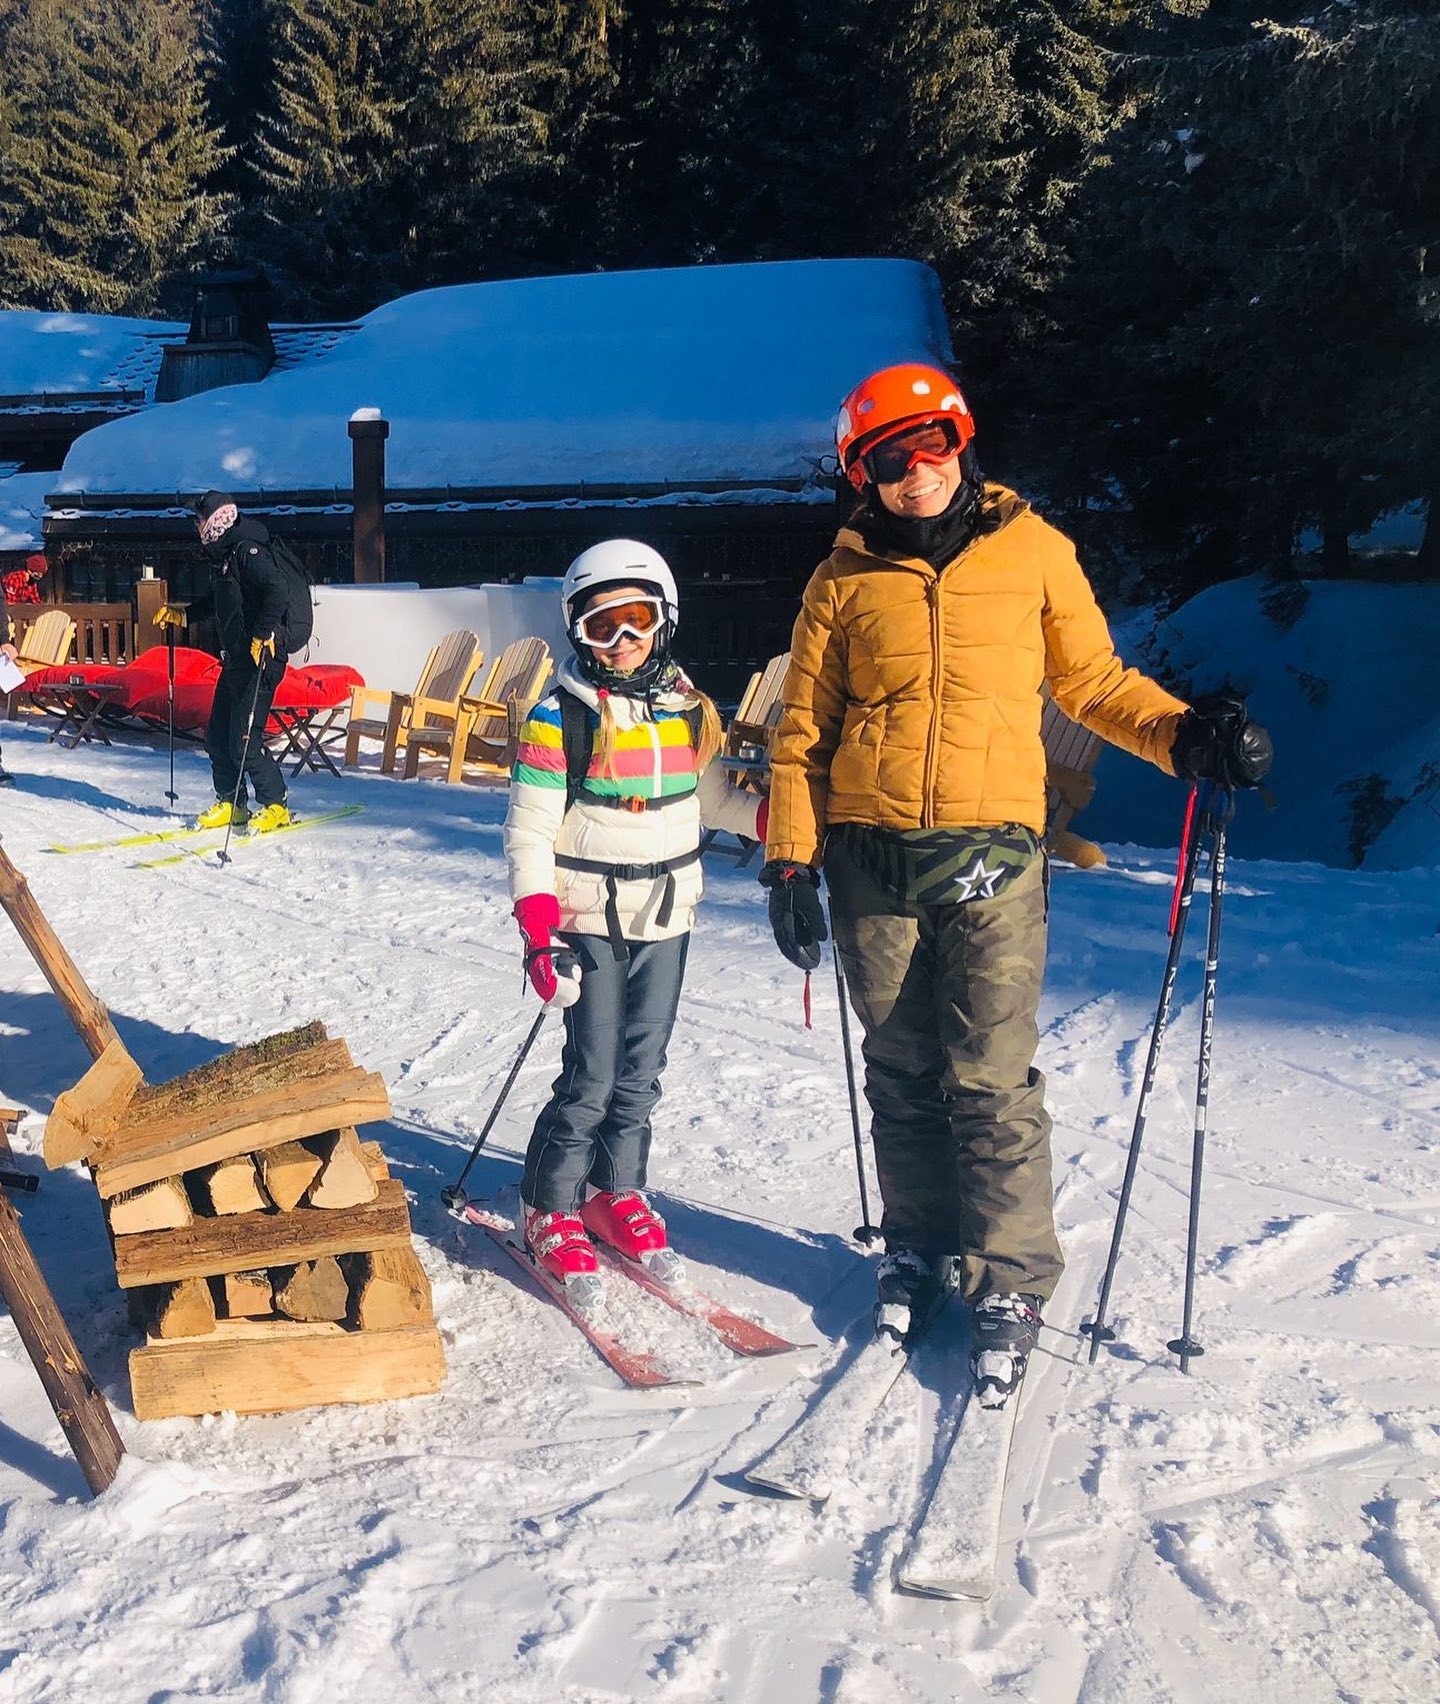 Angélica curte o dia esquiando ao lado da filha, Eva (Foto: Reprodução/ Instagram)